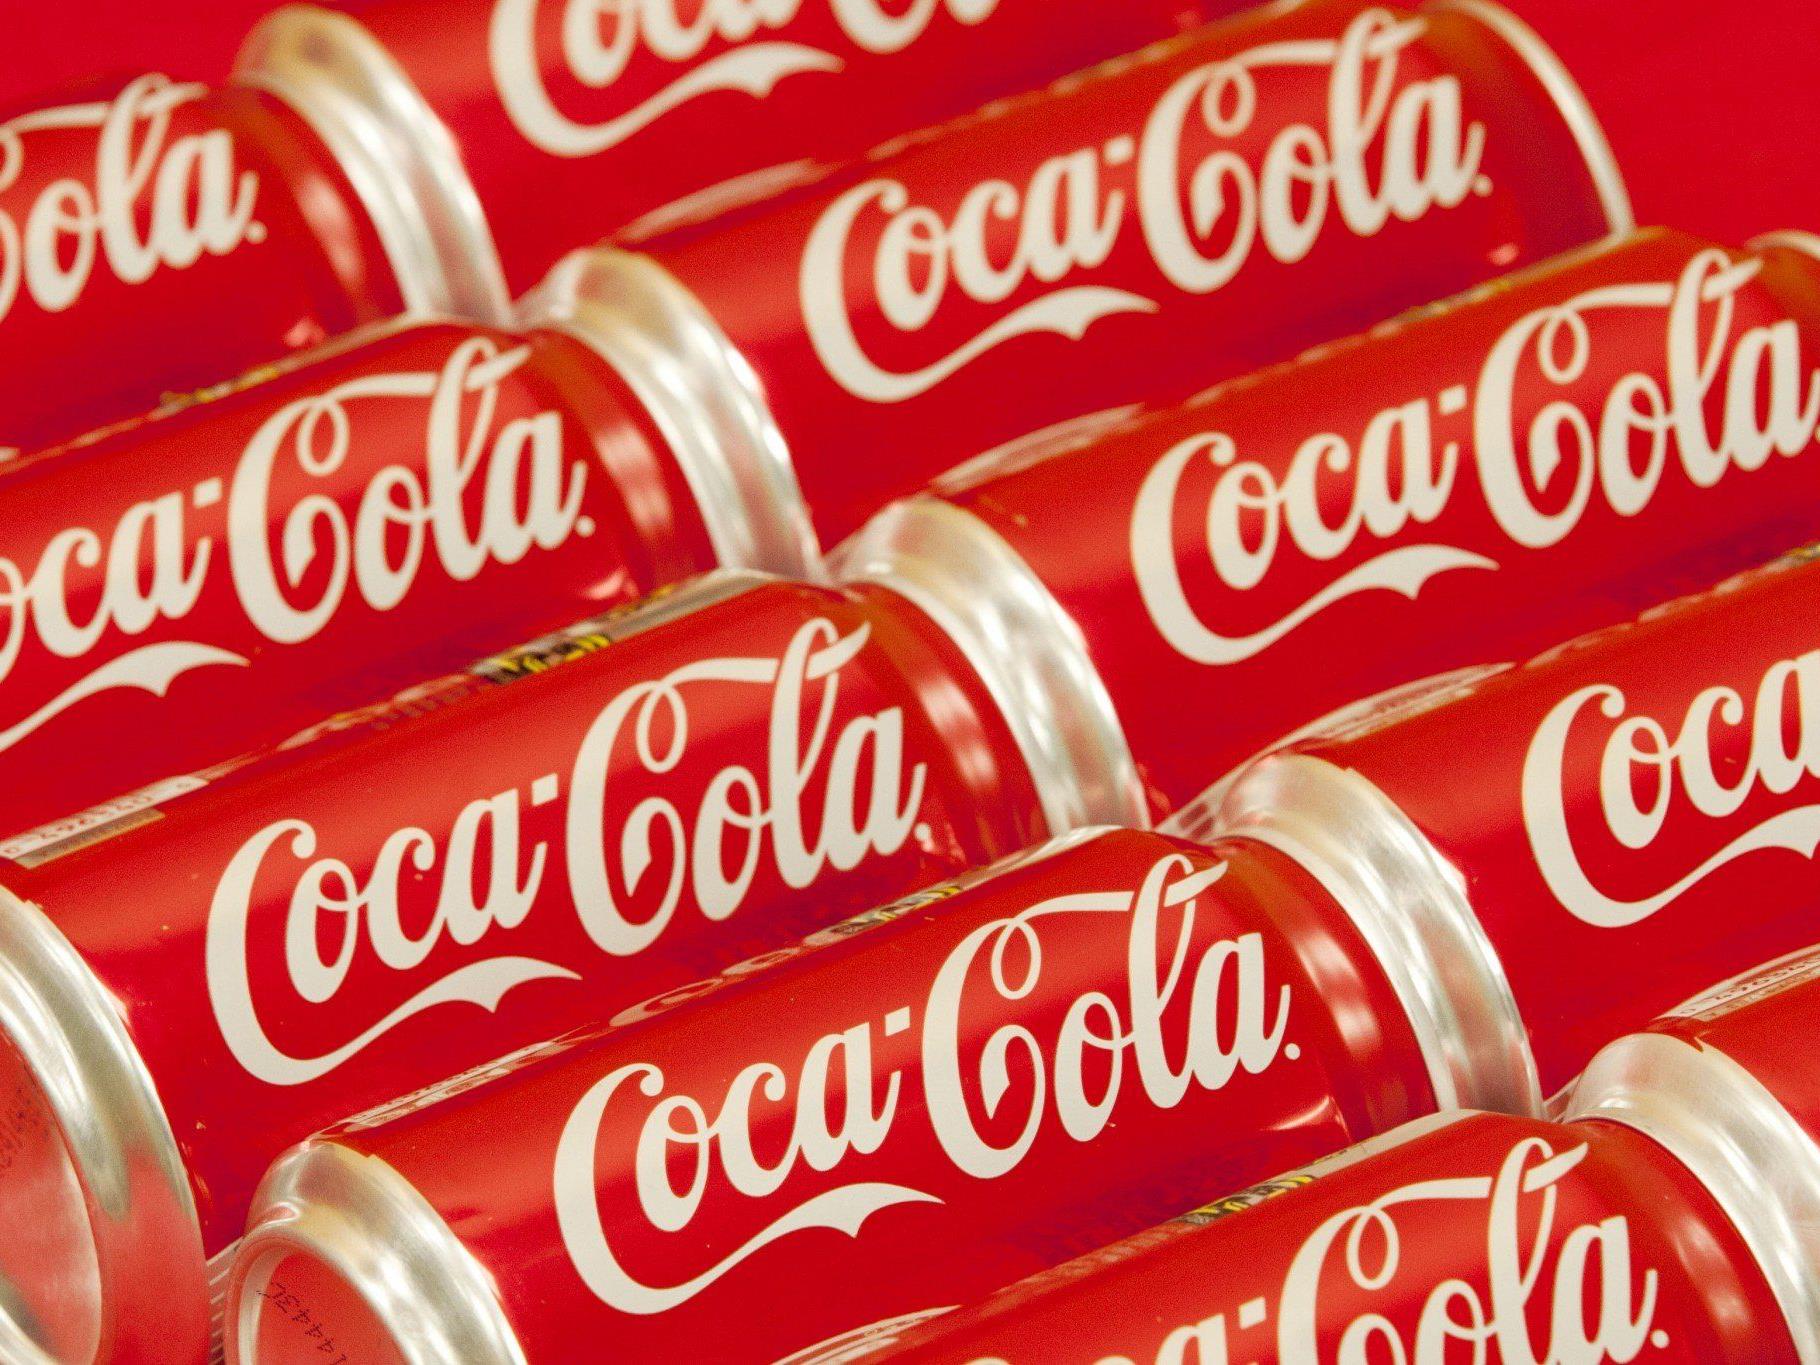 Coca-Cola wurde als wertvollste Marke abgelöst - jetzt steht Apple an der Spitze.